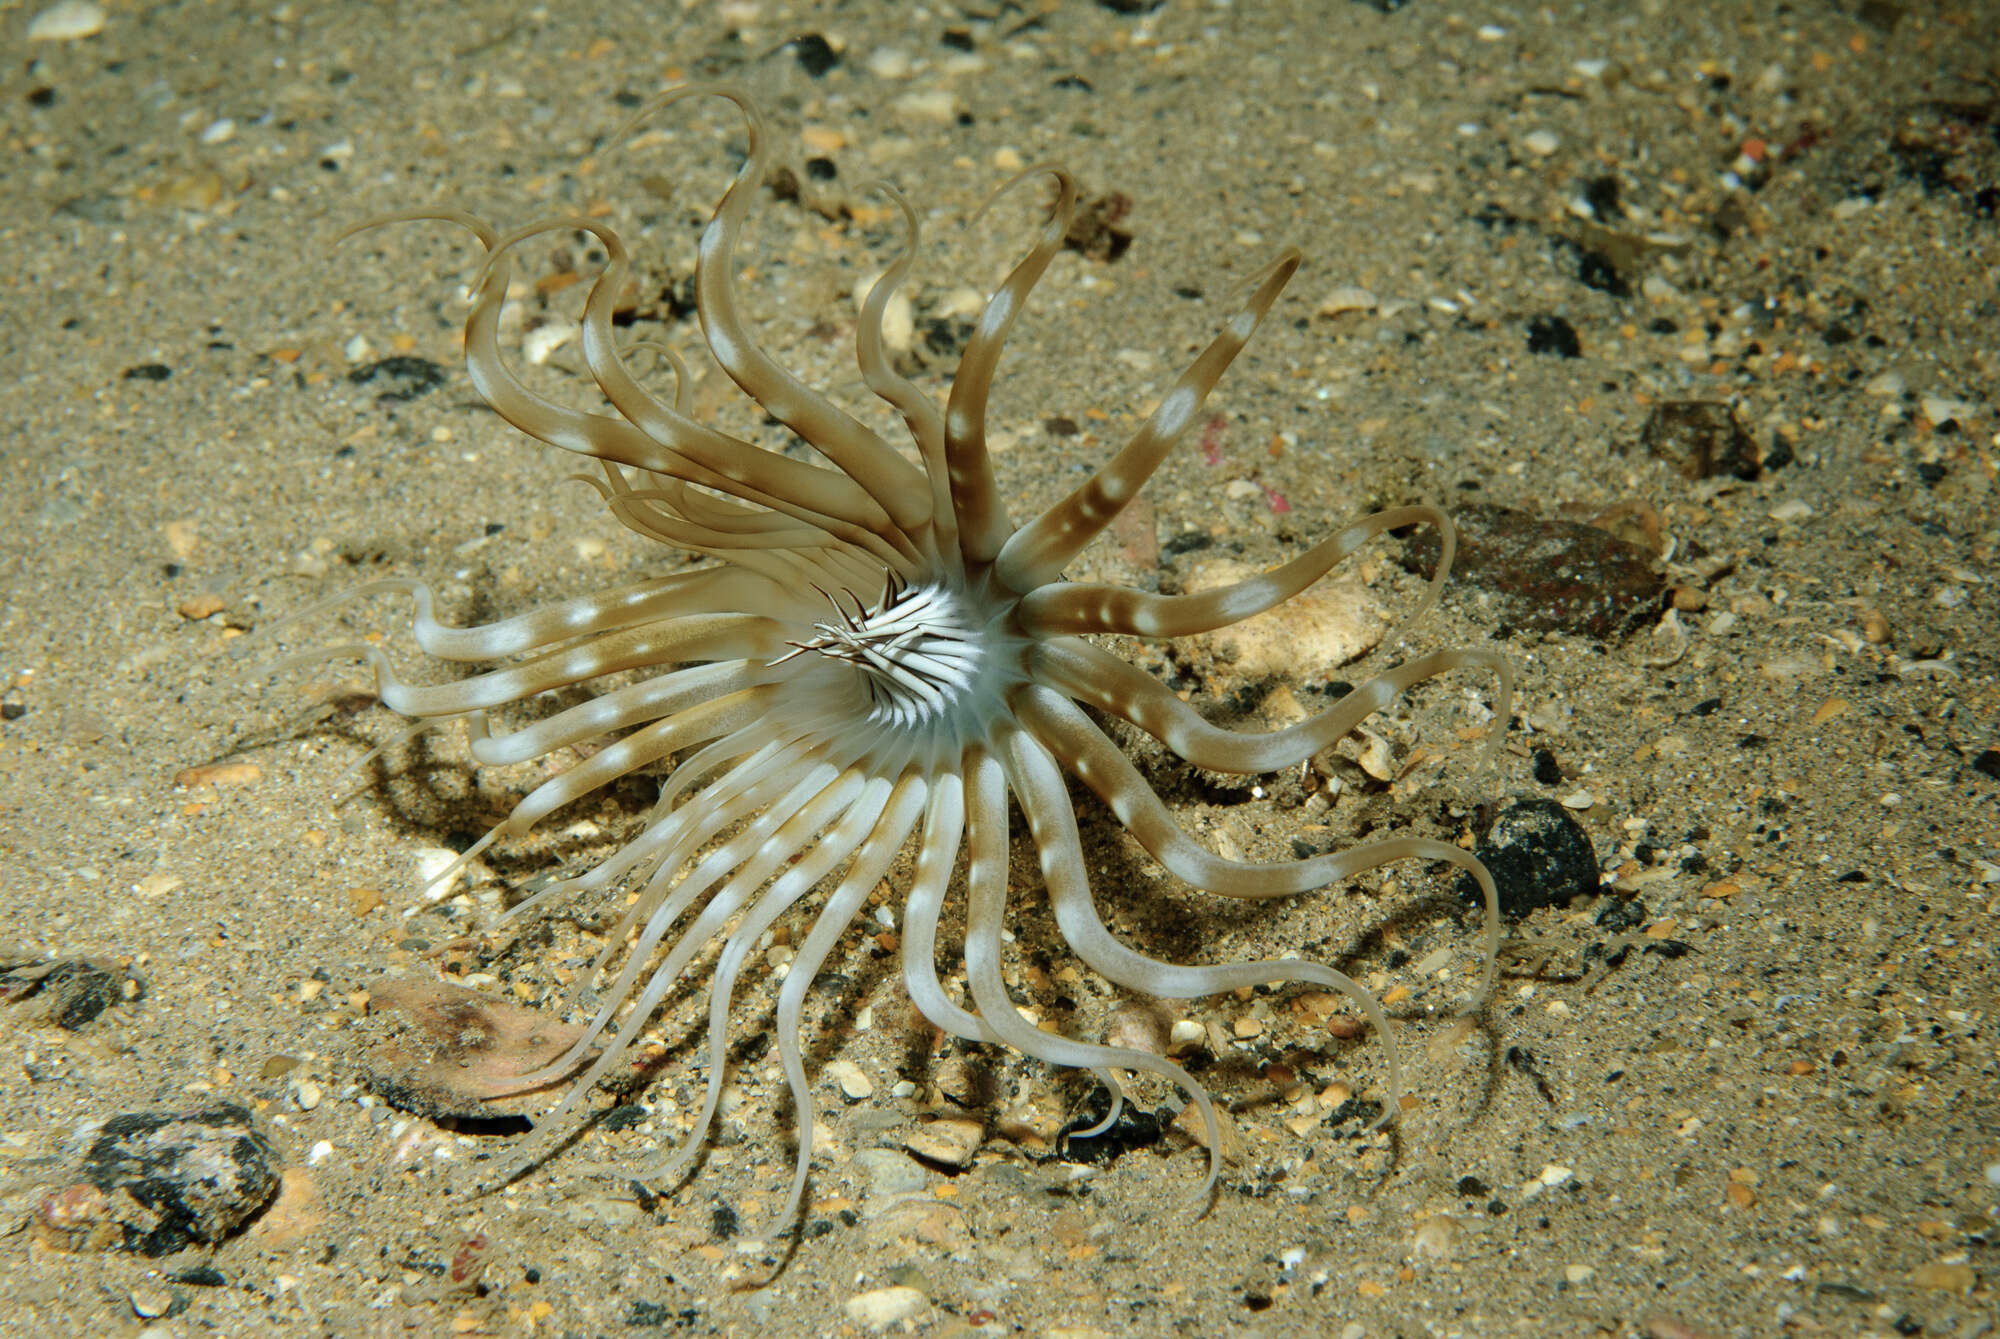 Image of scarce tube-dwelling anemone